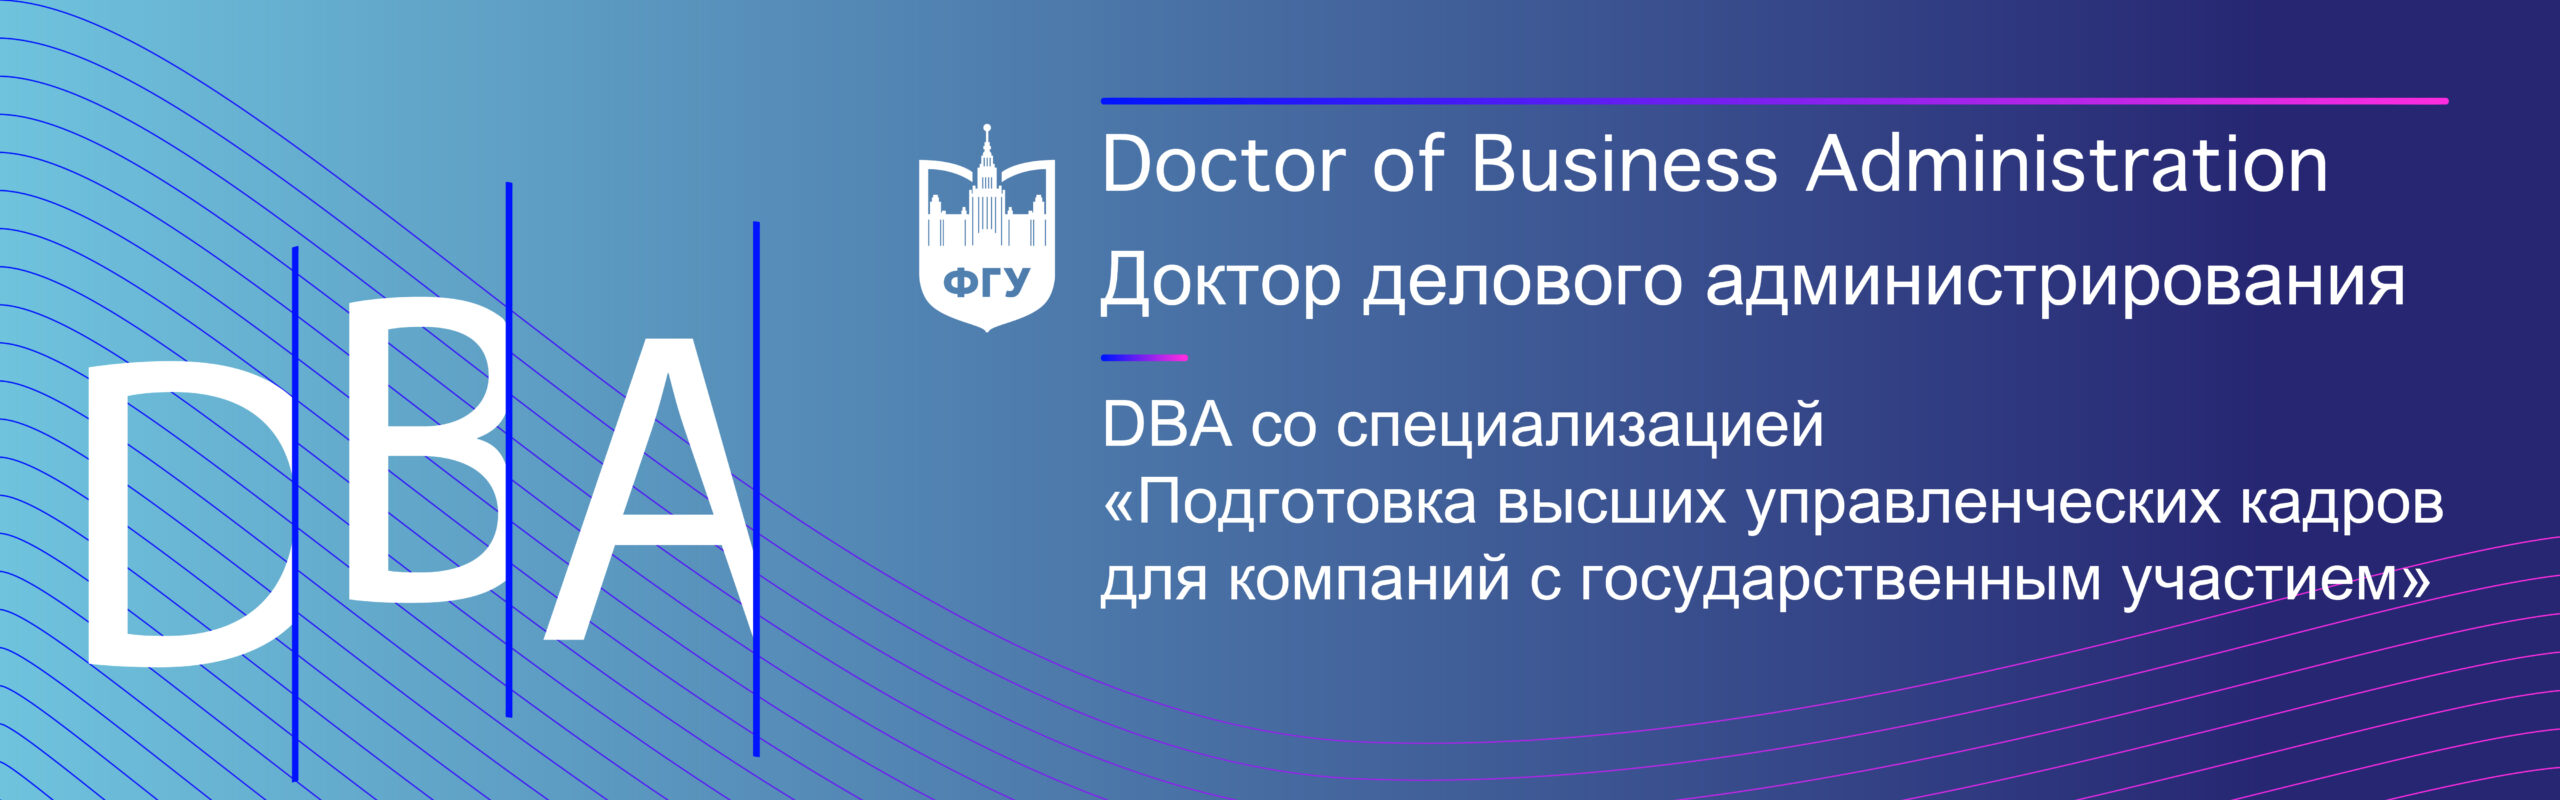 Доктор делового администрирования – Doctor of Business Administration (DBA)